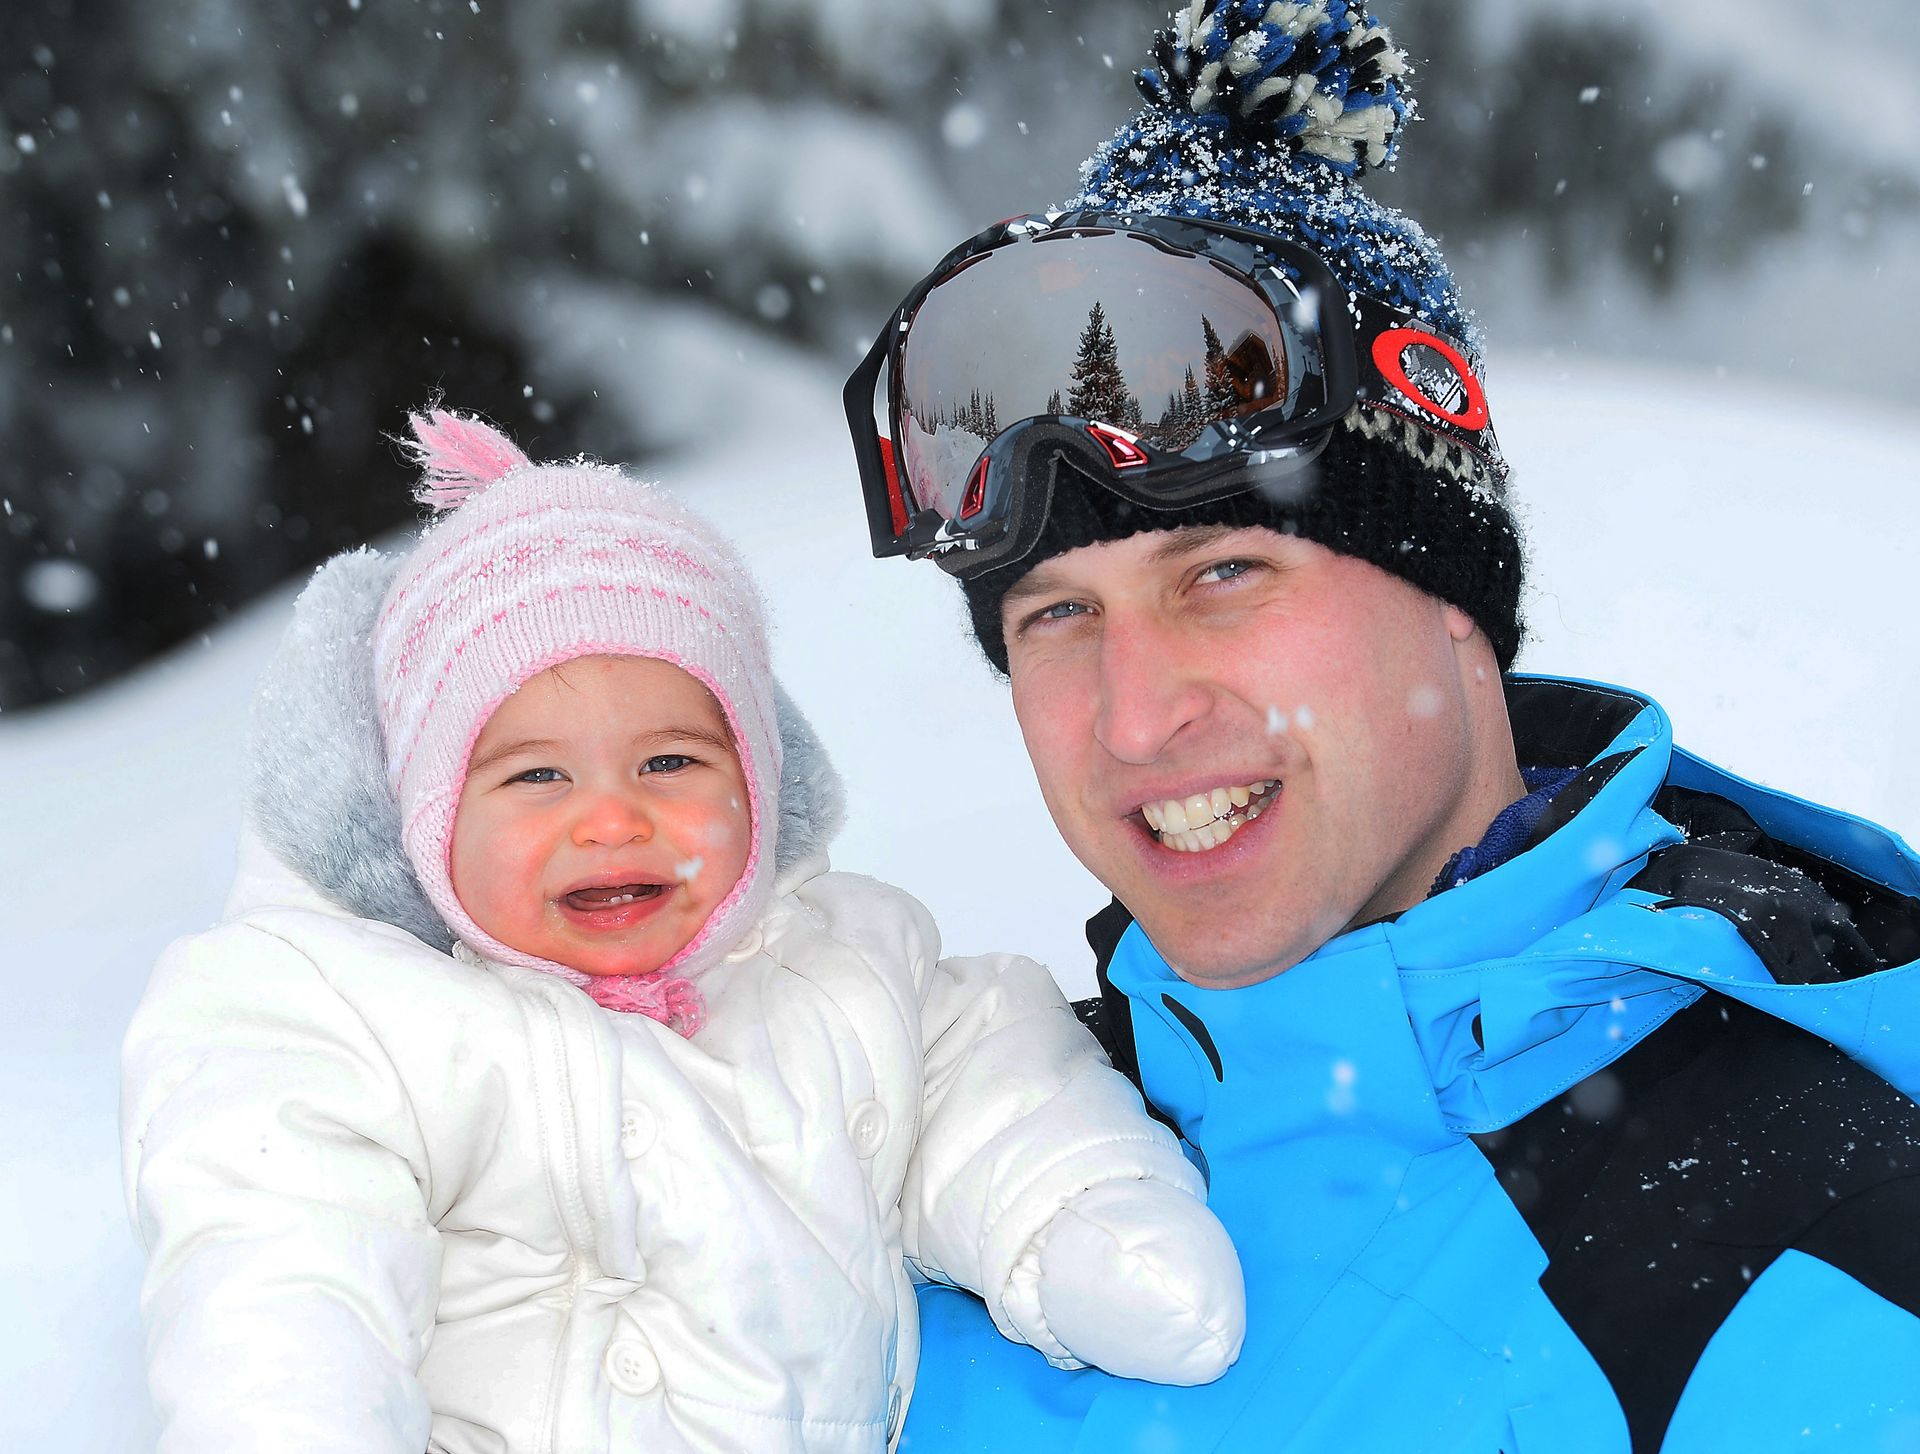 2016 - Prins William en prinses Charlotte in de sneeuw tijdens een vakantie in de Franse Alpen